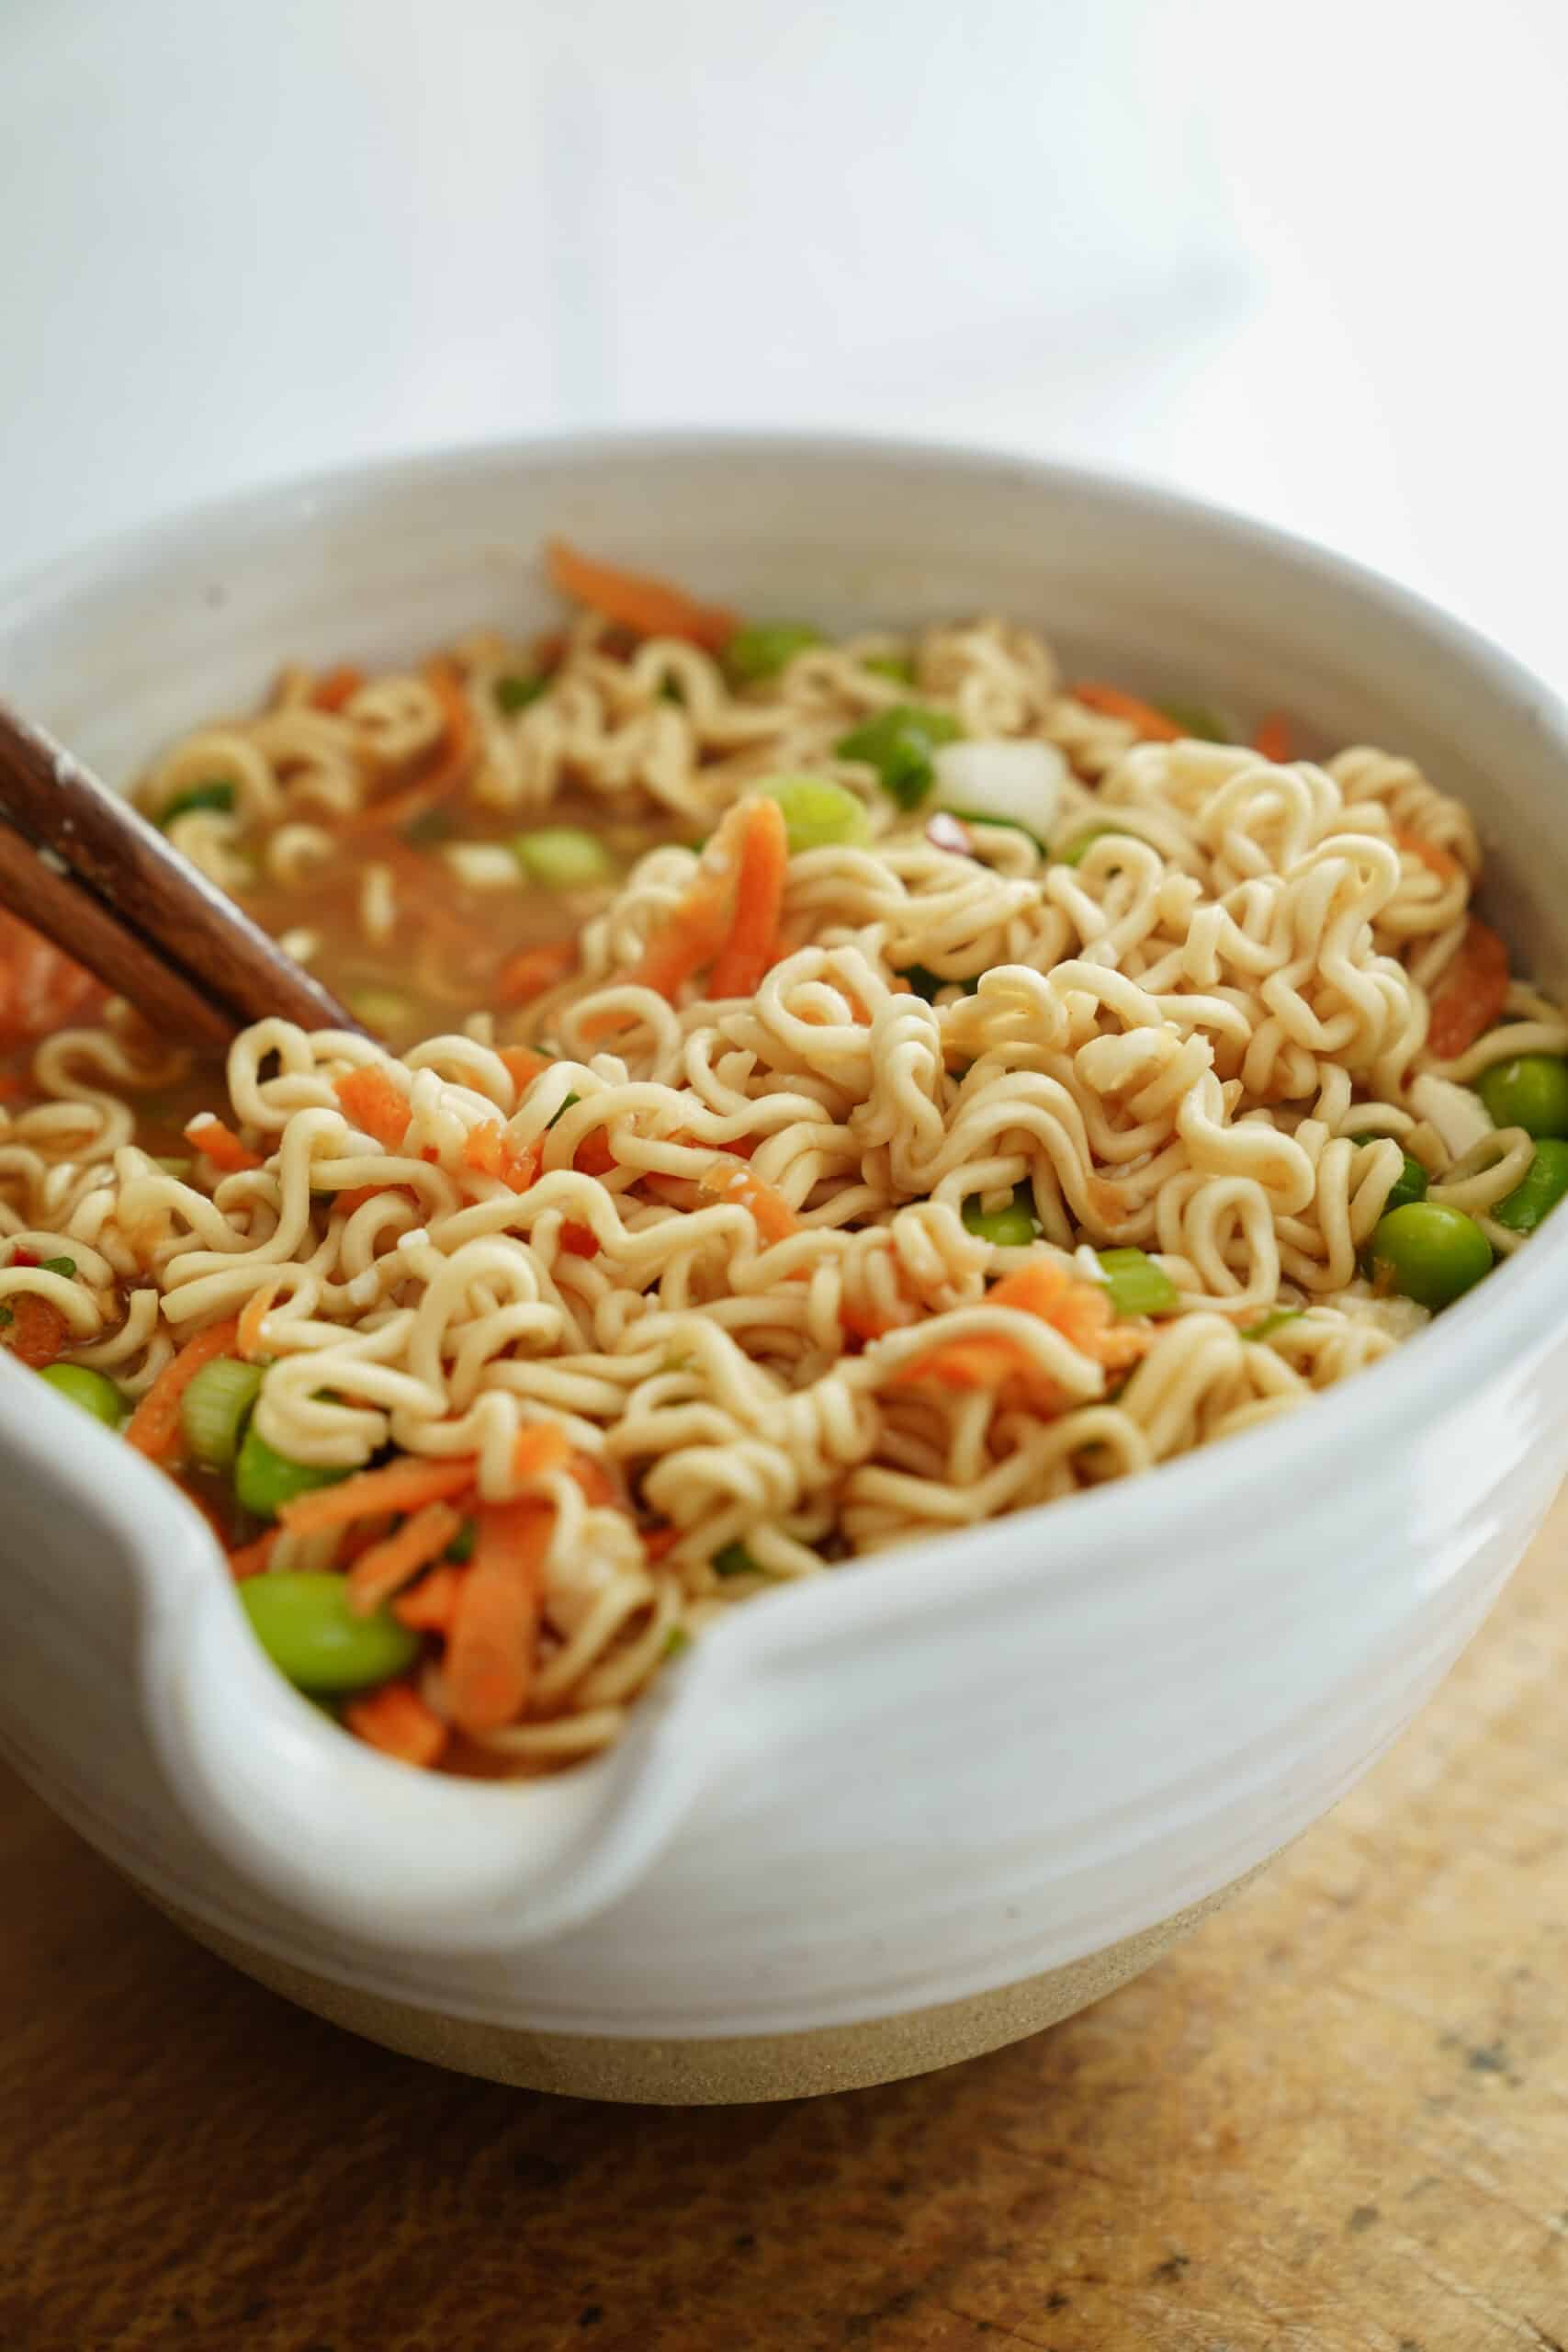 Instant noodles poured into a bowl